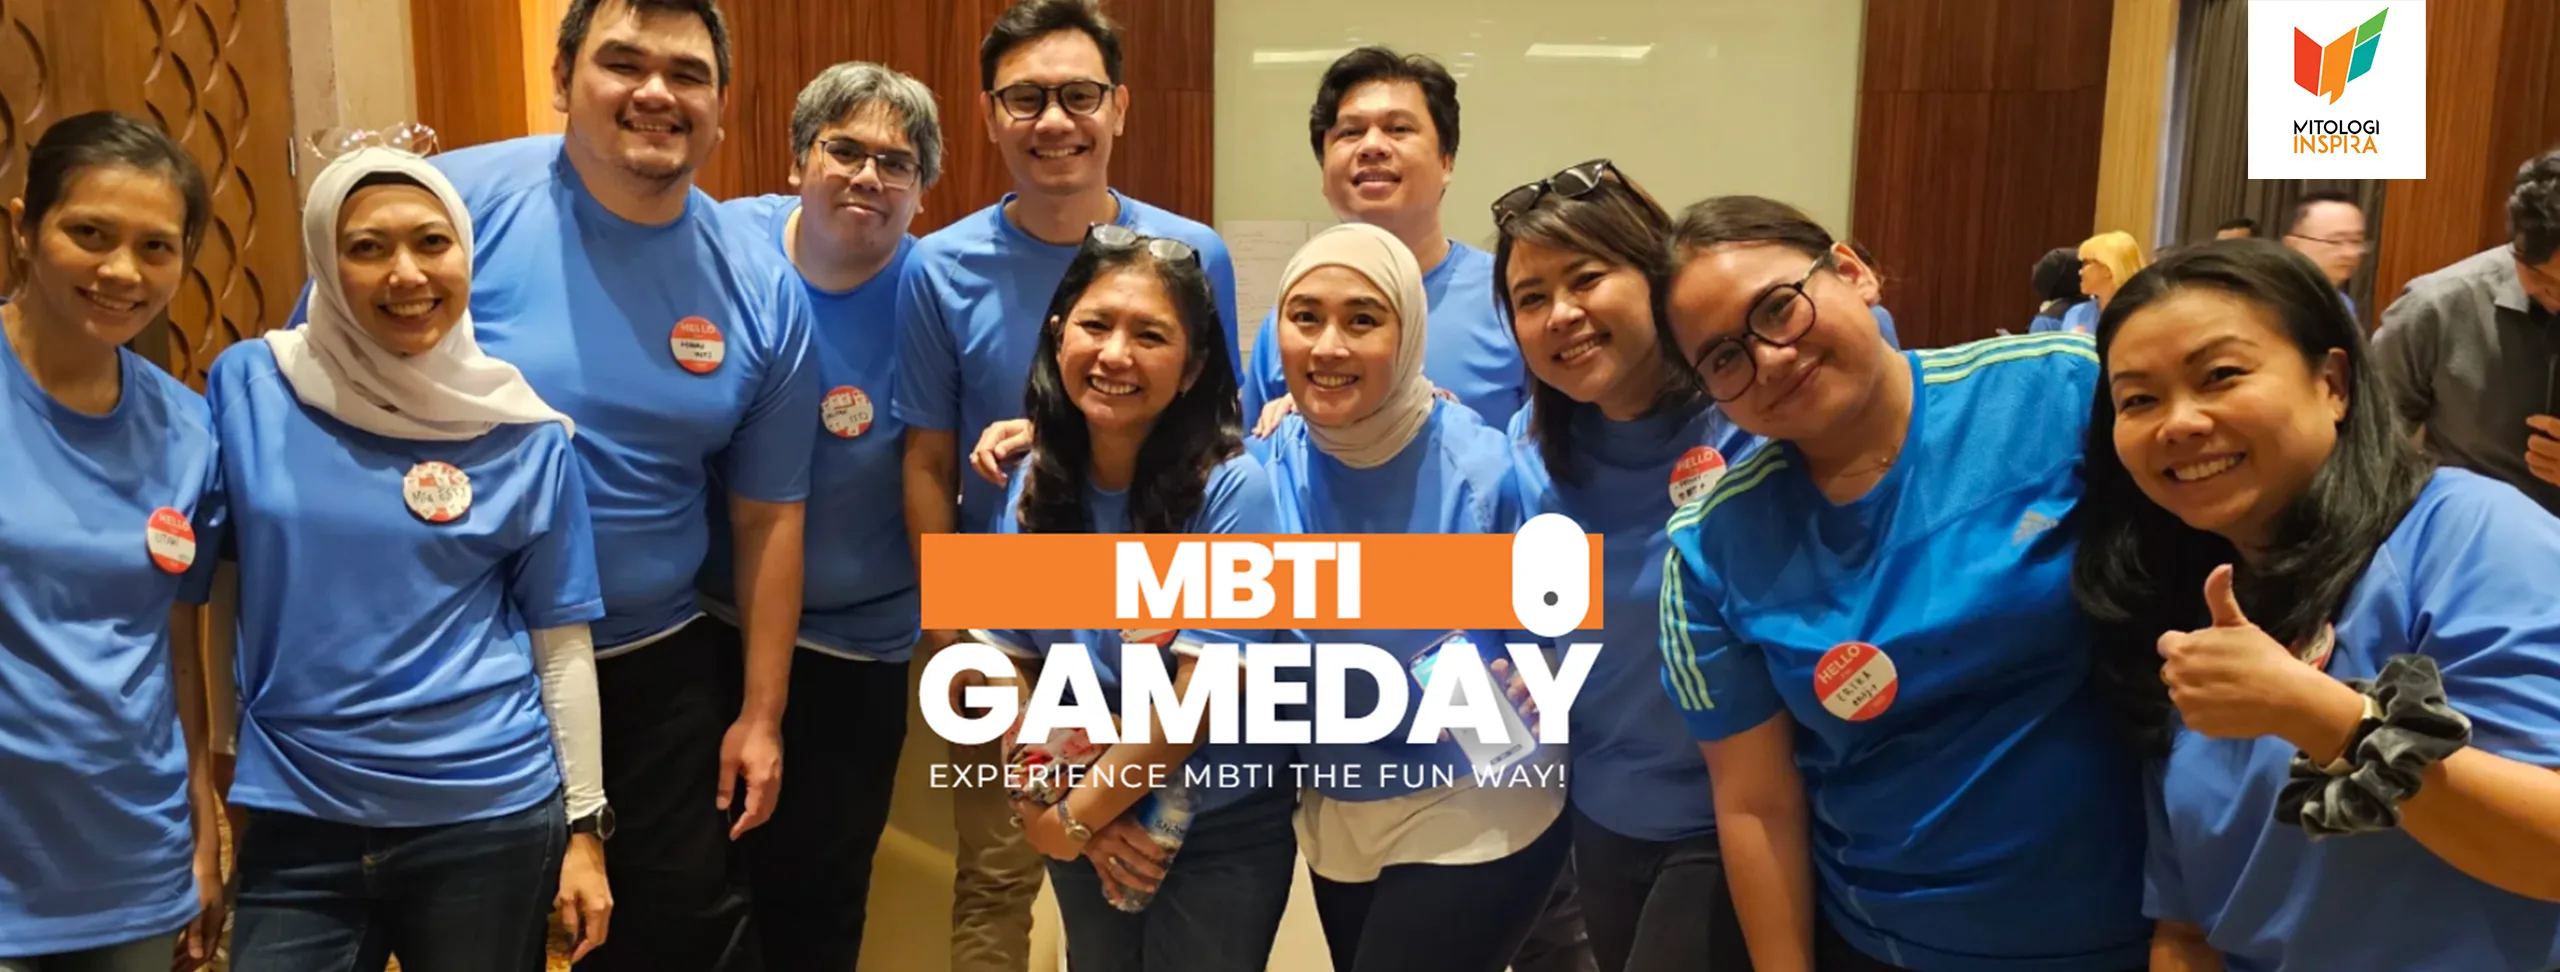 Training Teamwork berbasis MBTI Resmi Indonesia, MBTI Gameday, penuh aktivitas, permainan outing, outbound, dan team building berdasarkan praktek MBTI untuk teamwork dan kerjasama tim perusahaan